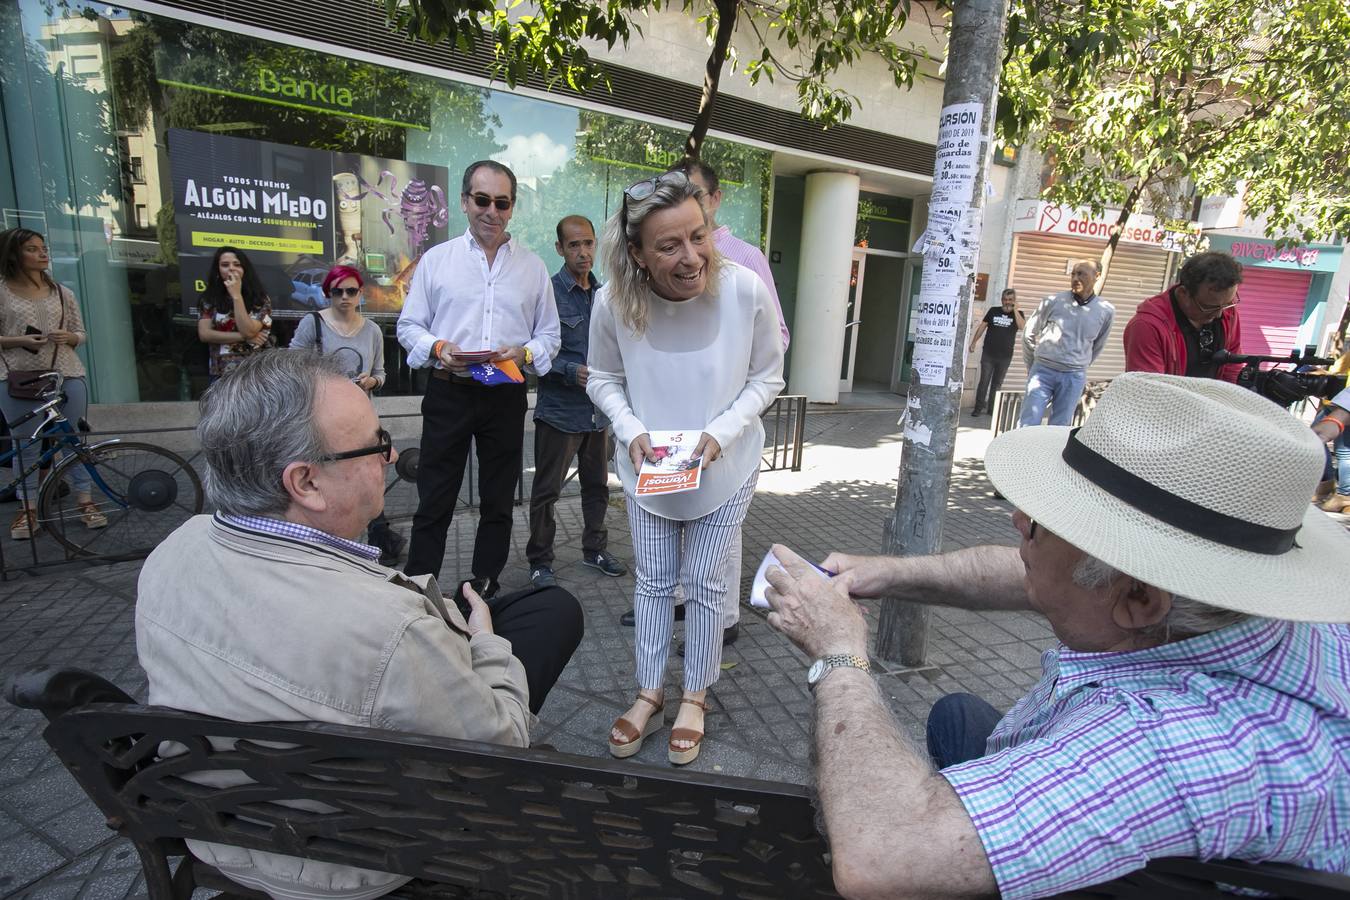 Las imágenes que dejó la campaña en Córdoba